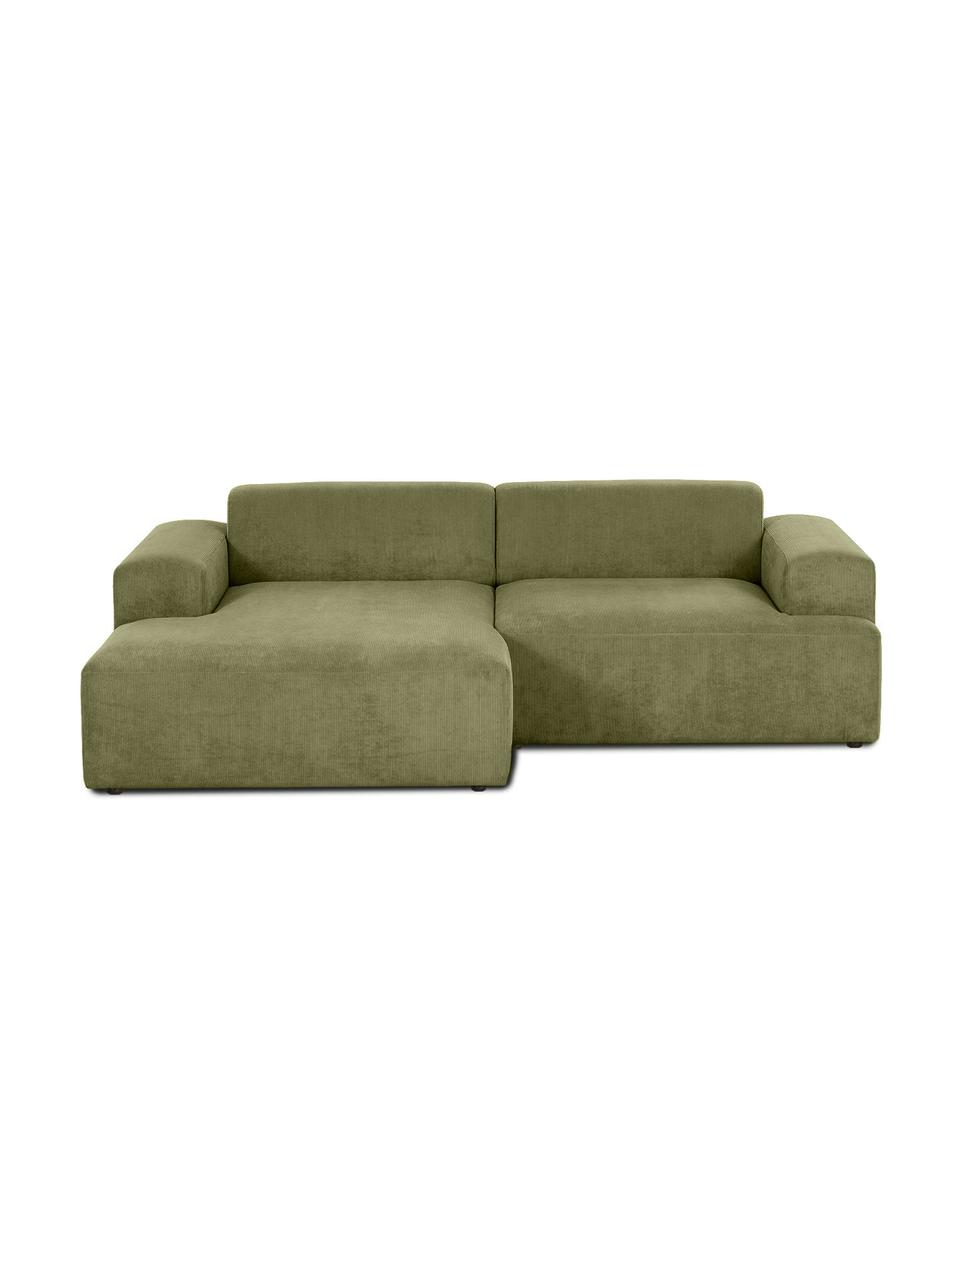 Canapé d'angle 3 places velours côtelé vert Melva, Velours côtelé vert, larg. 239 x prof. 143 cm, méridienne à gauche